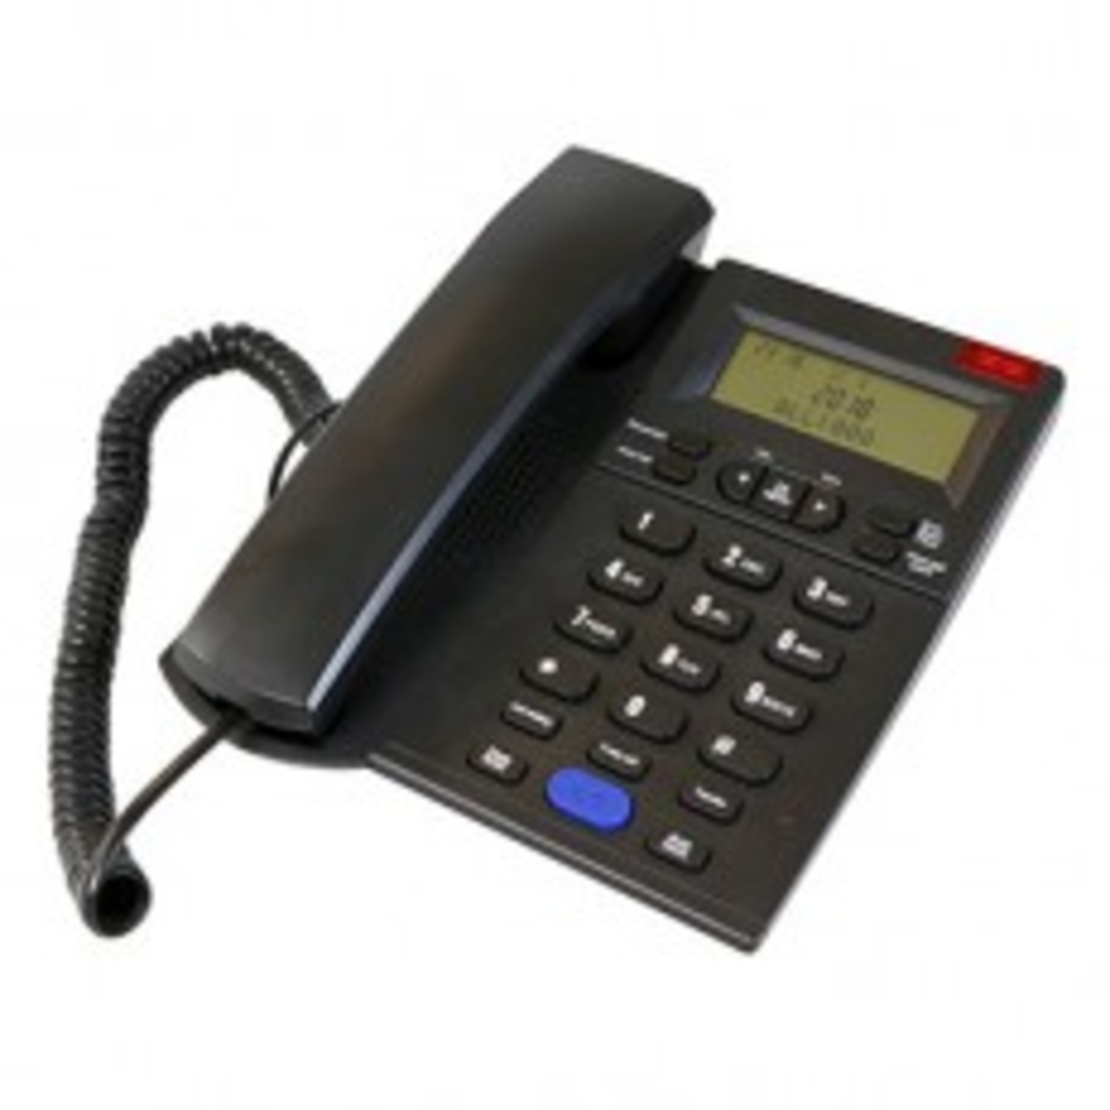 טלפון משרדי  דקורטיבי שחור HYUNDAI HDT-2600B